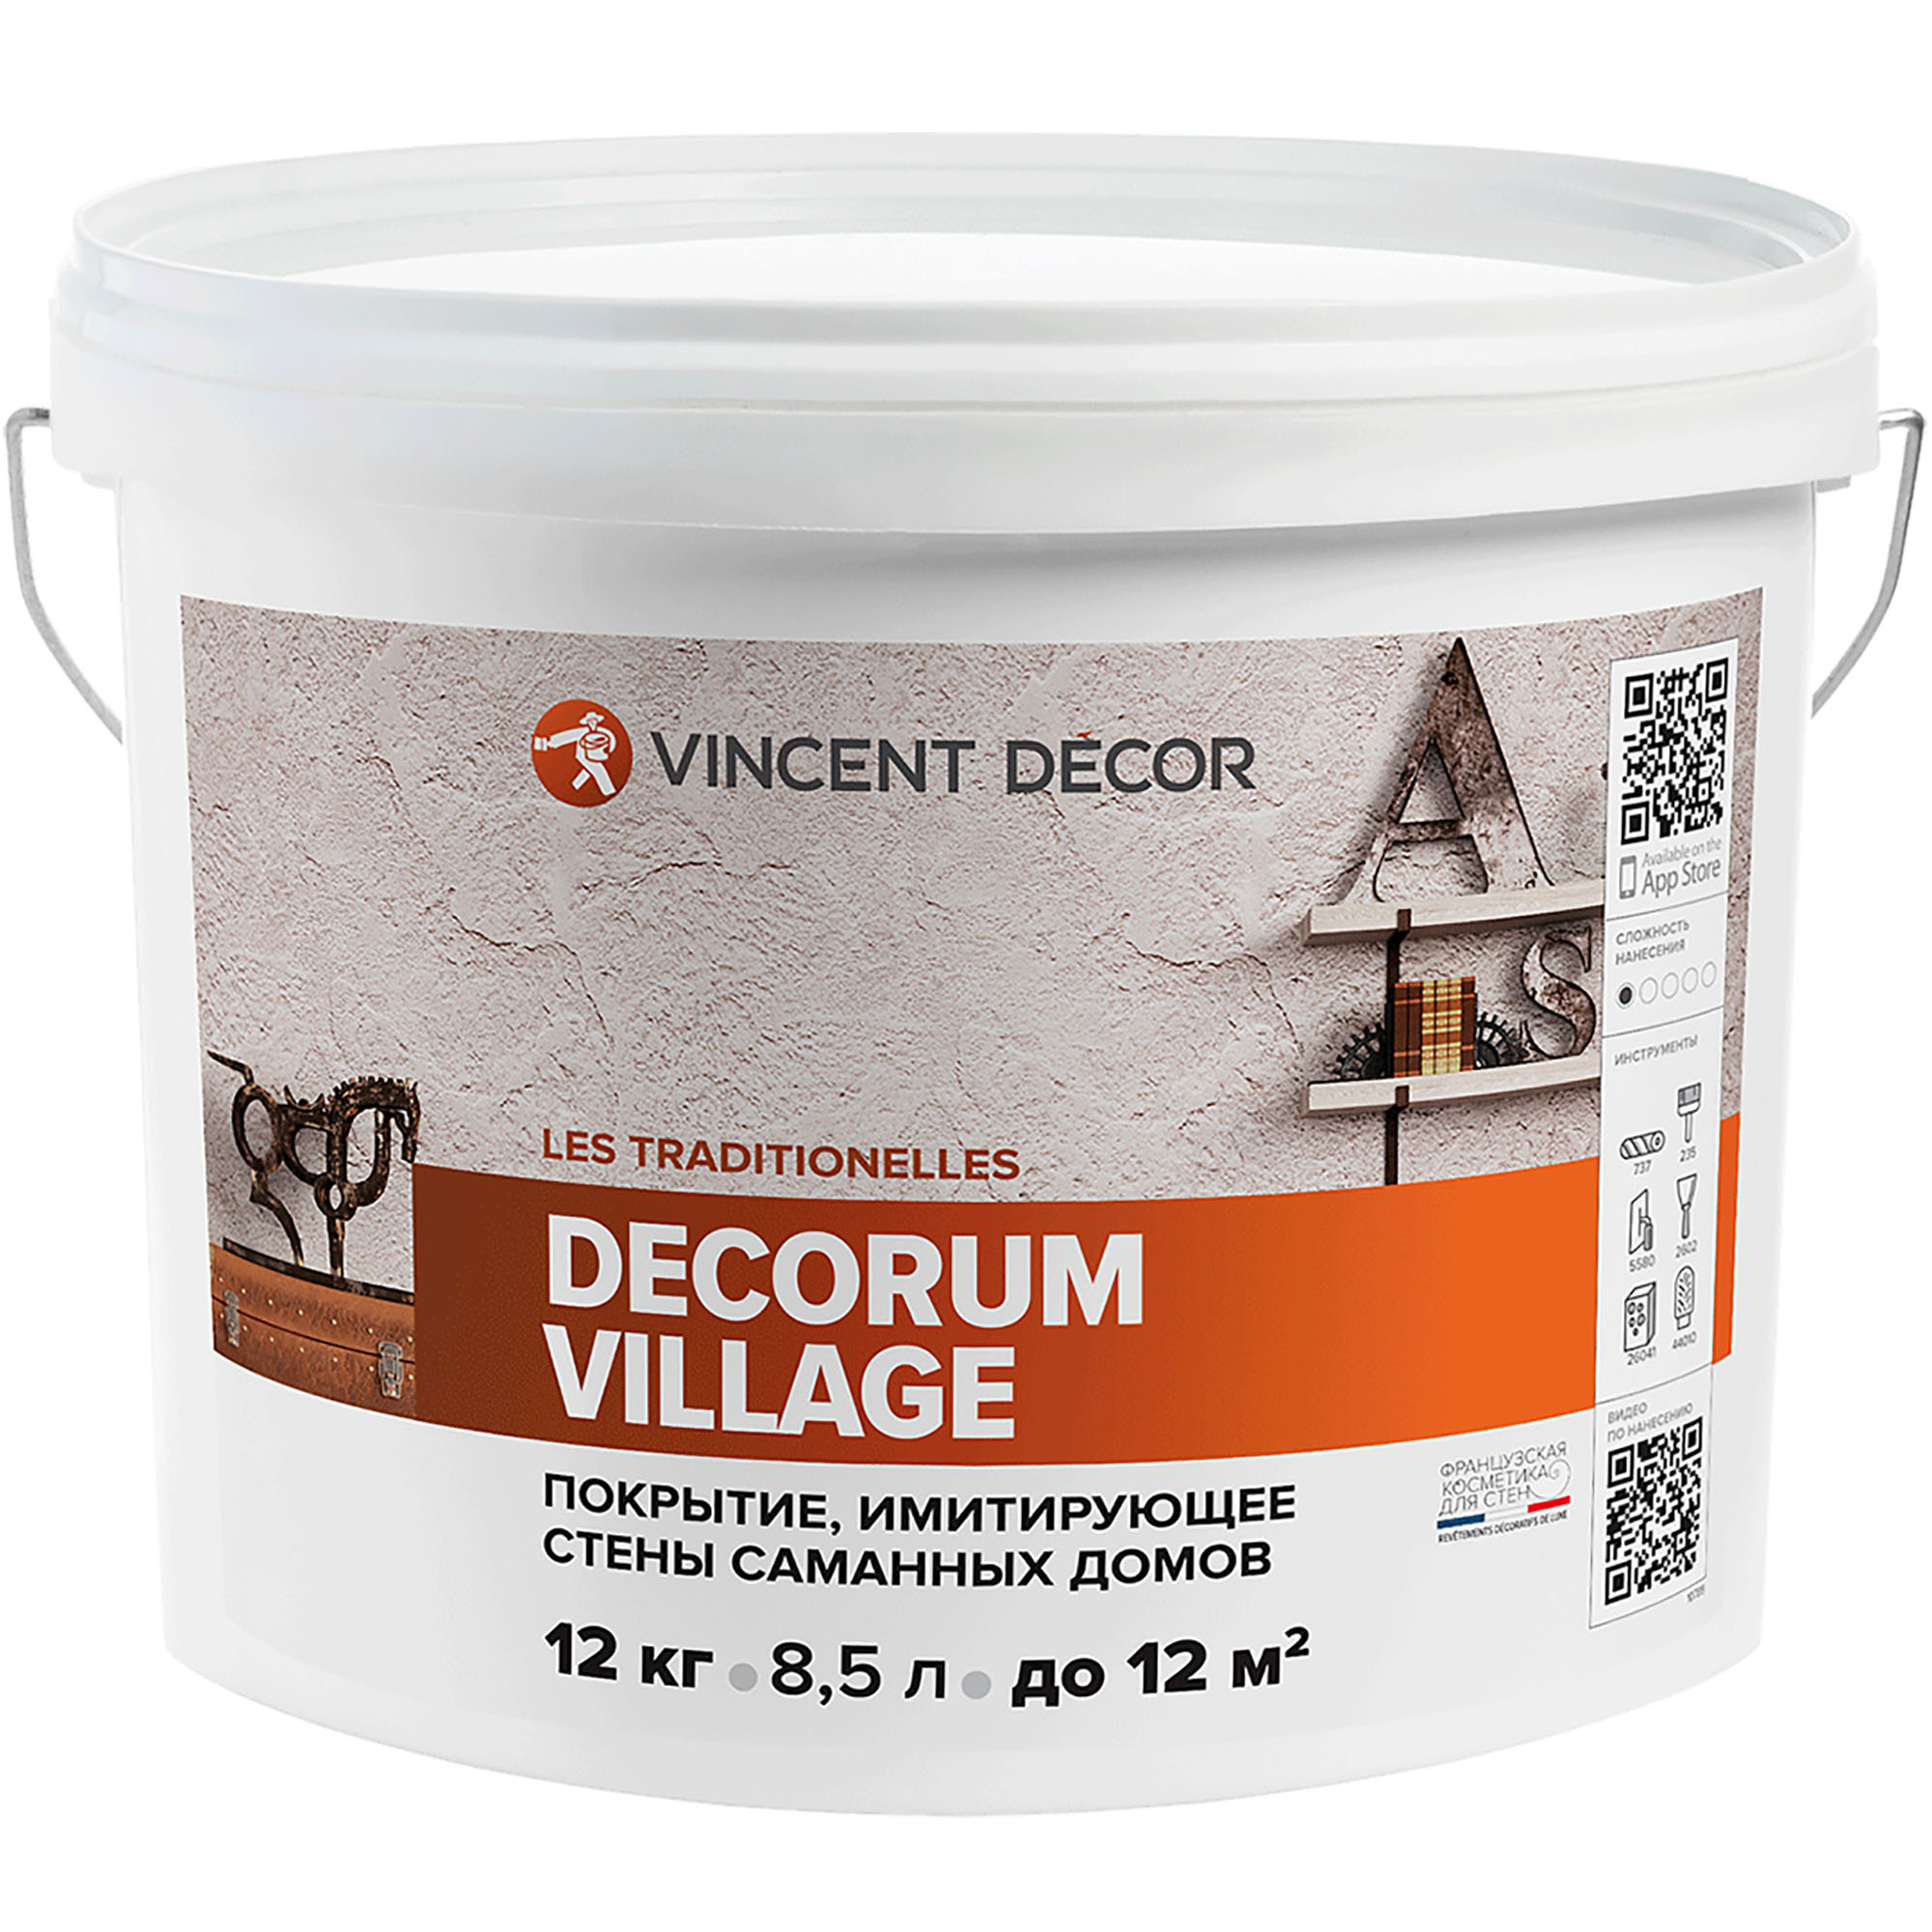 фото Декоративное покрытие vincent decor decorum village с эффектом, имитирующий стены саманных домов 12 кг